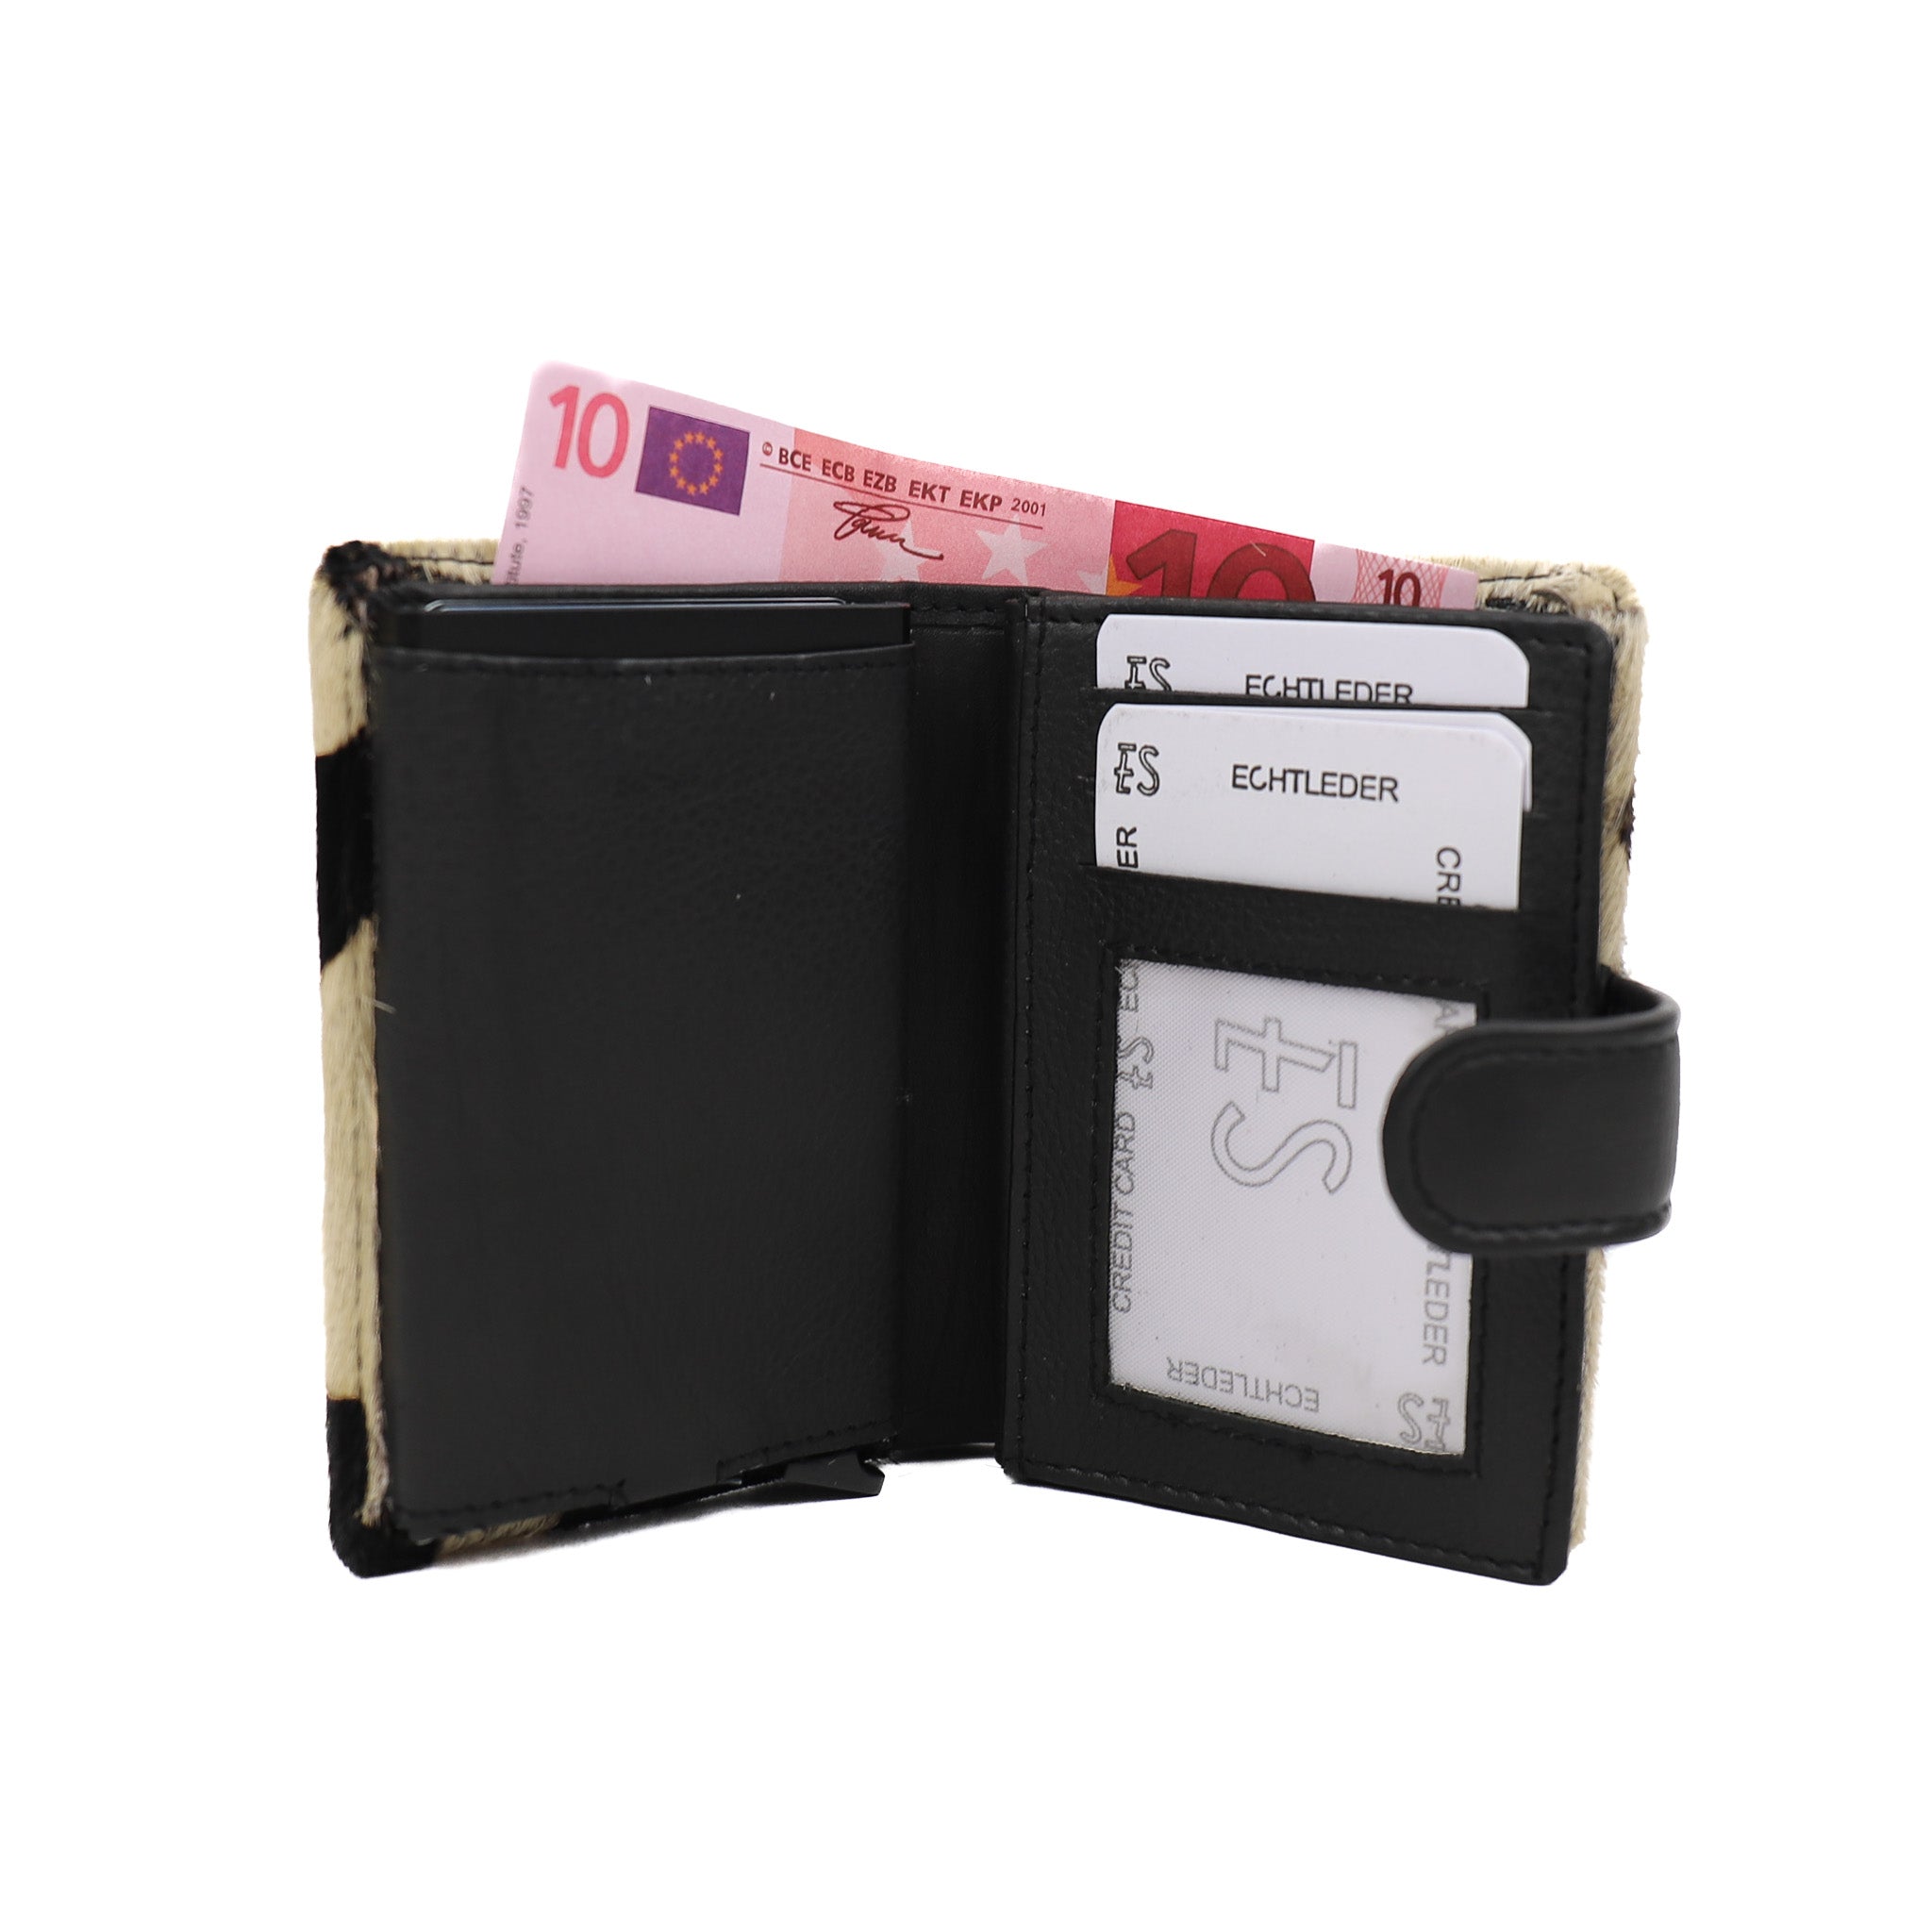 Kartenhalter - Mit versteckter Tasche, 1,69 €